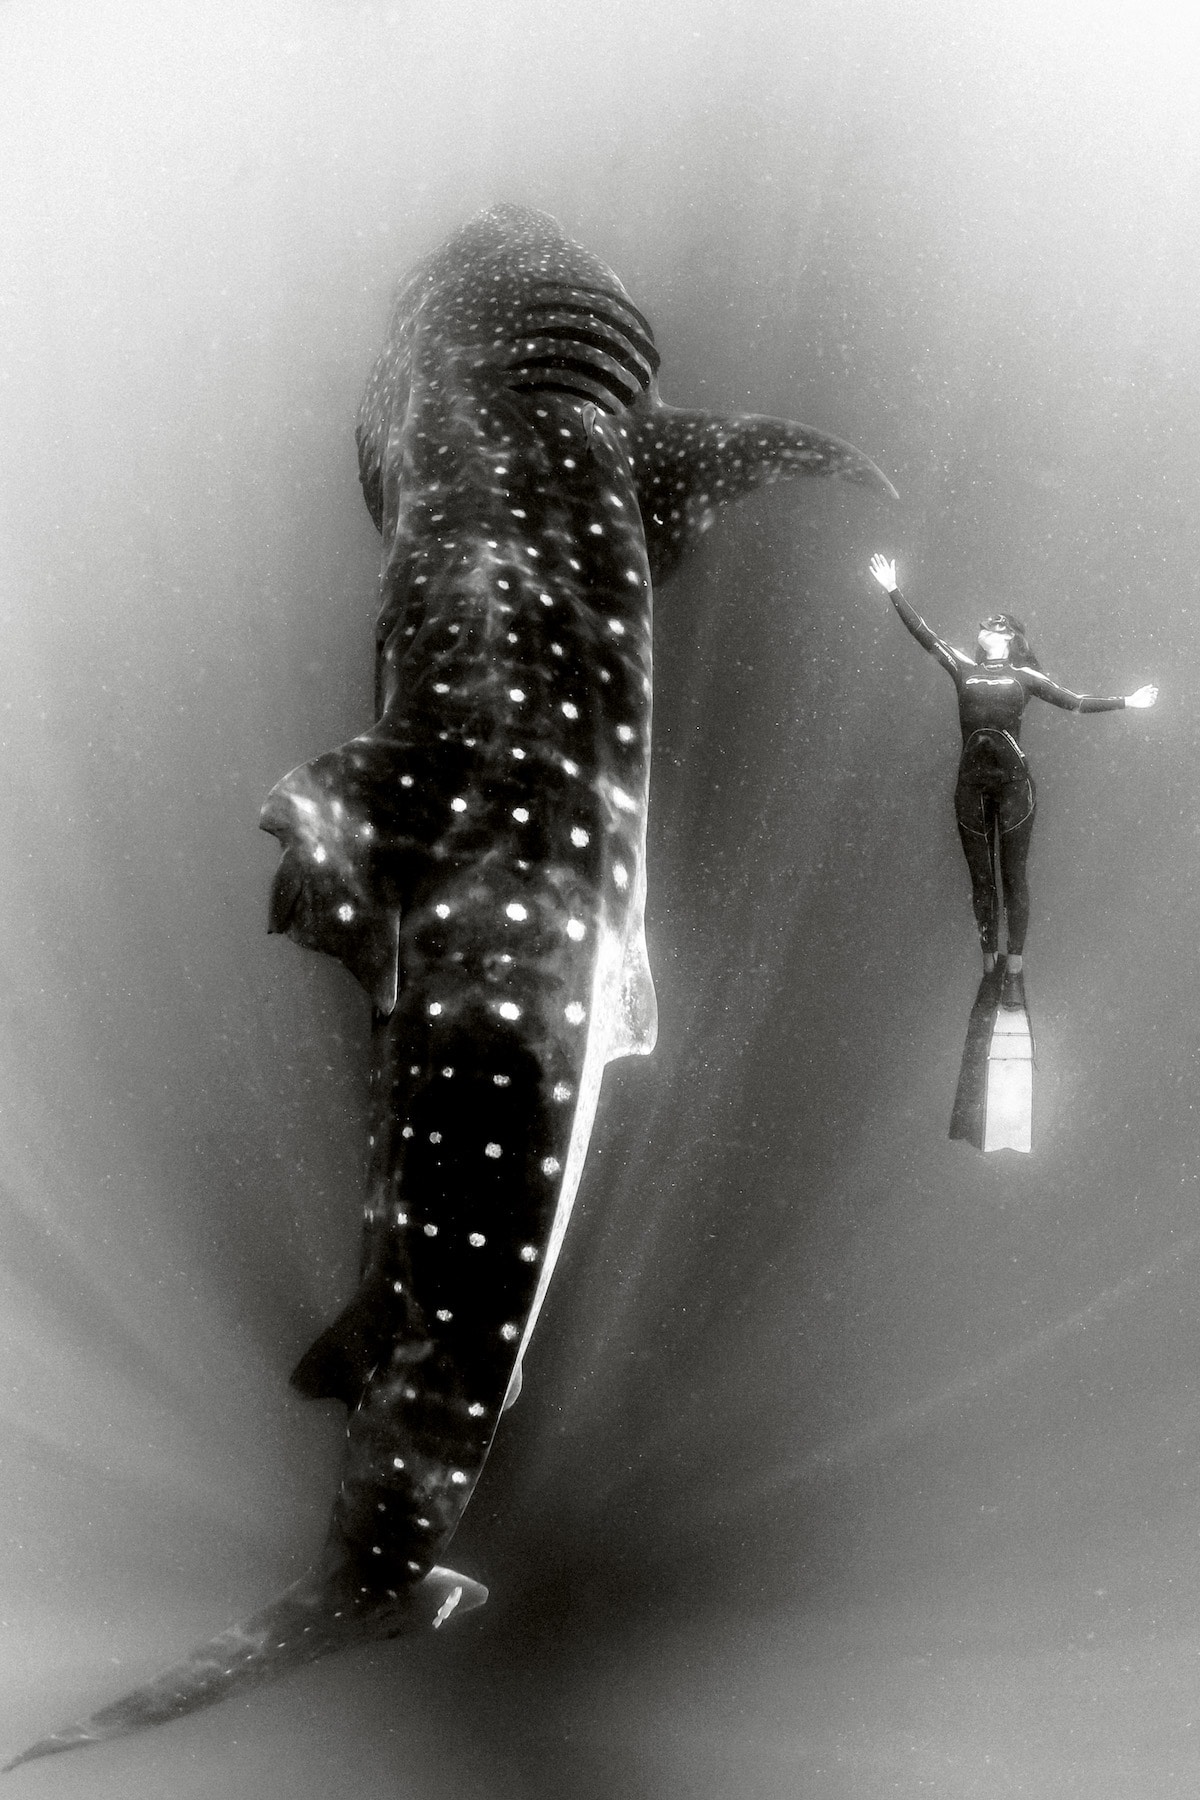 fotografía submarina en blanco y negro